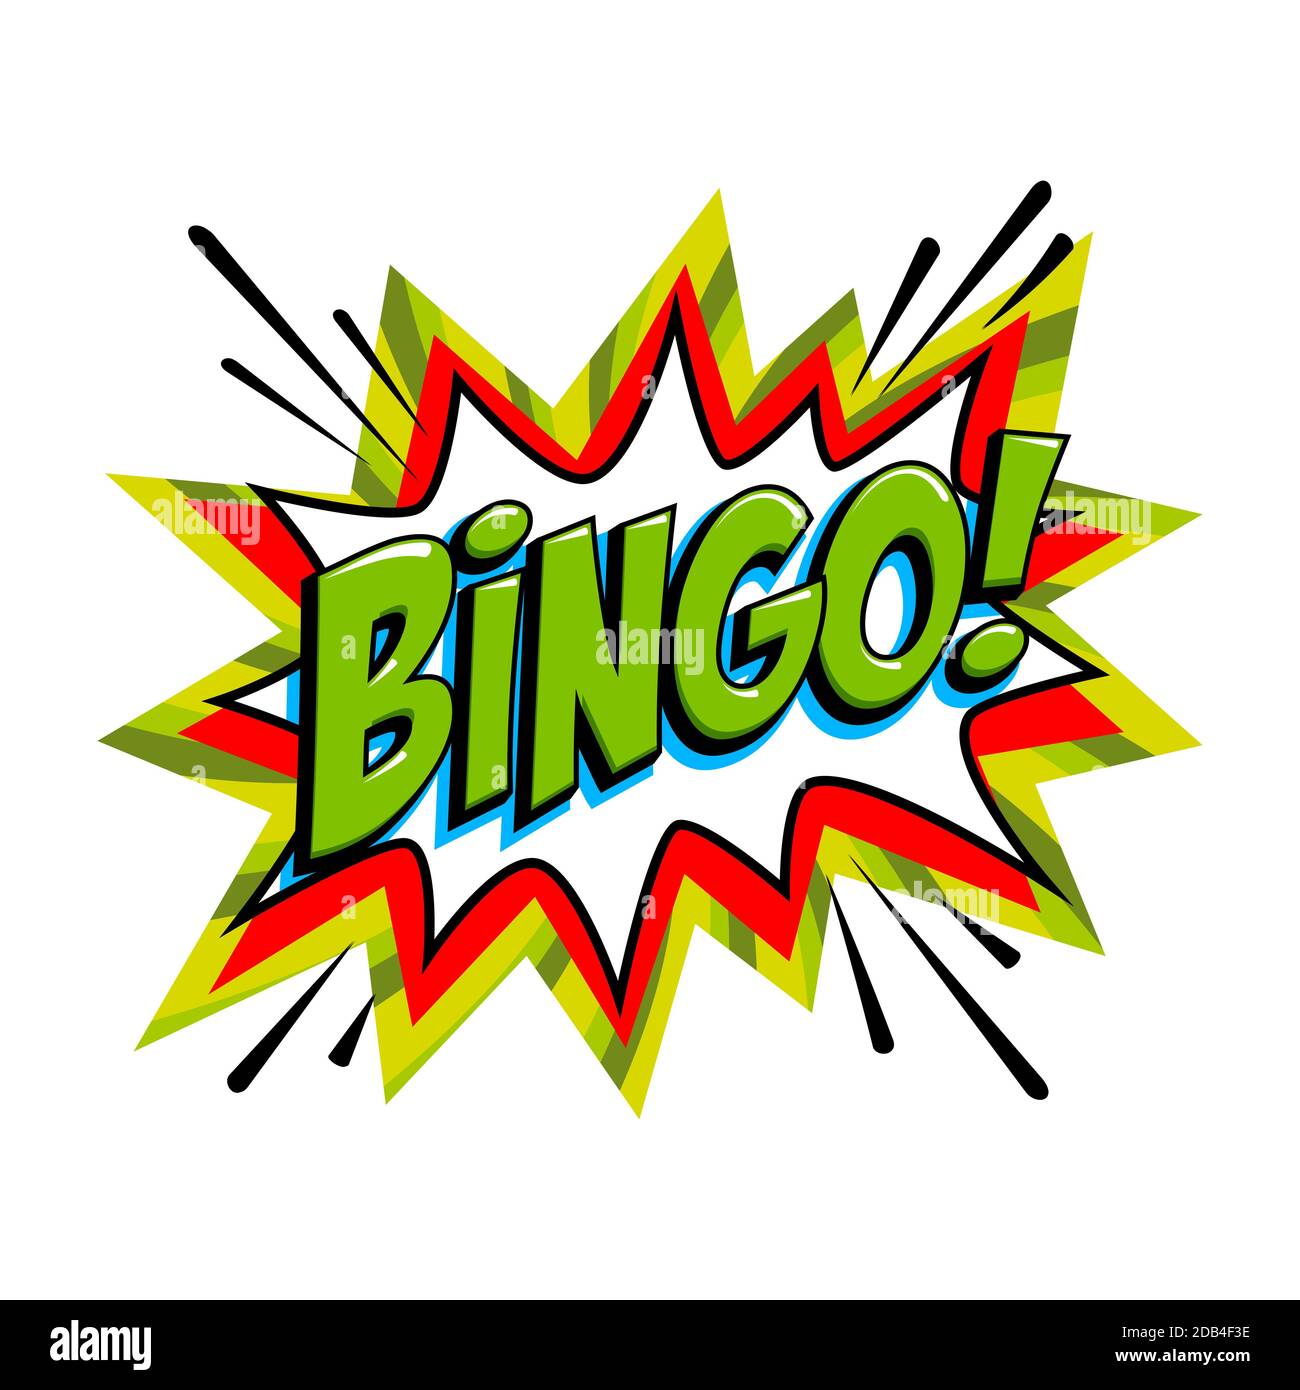 Bingo - Lotterie grünen Vektor-Banner. Lotterie-Spiel Hintergrund in Comic Pop-Art-Stil Stock Vektor